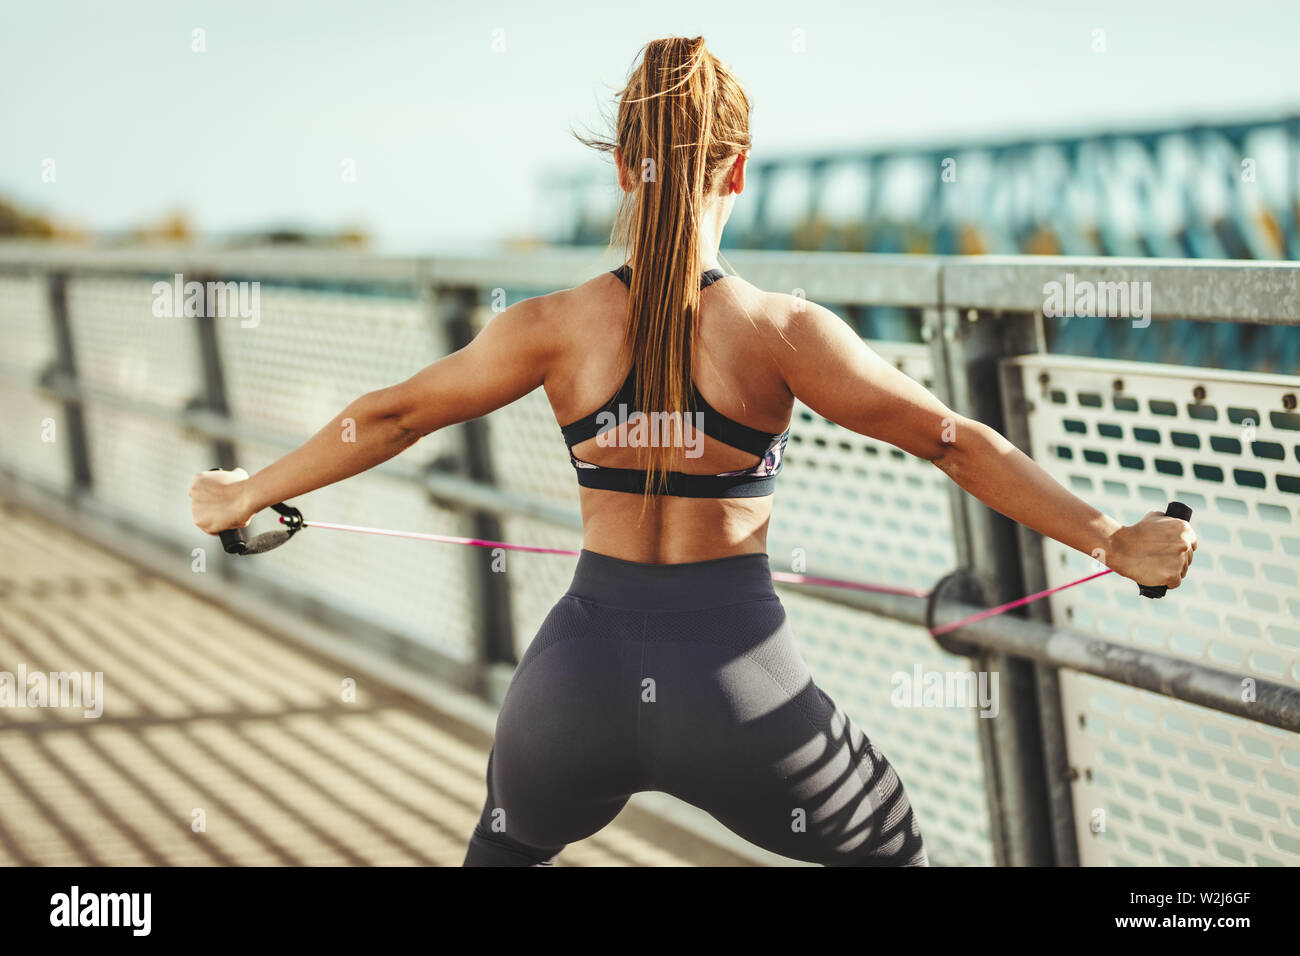 Muskulöse junge Frau tut gut geeignet sind Körper Training mit elastischen Gummiband auf der Brücke. Stockfoto